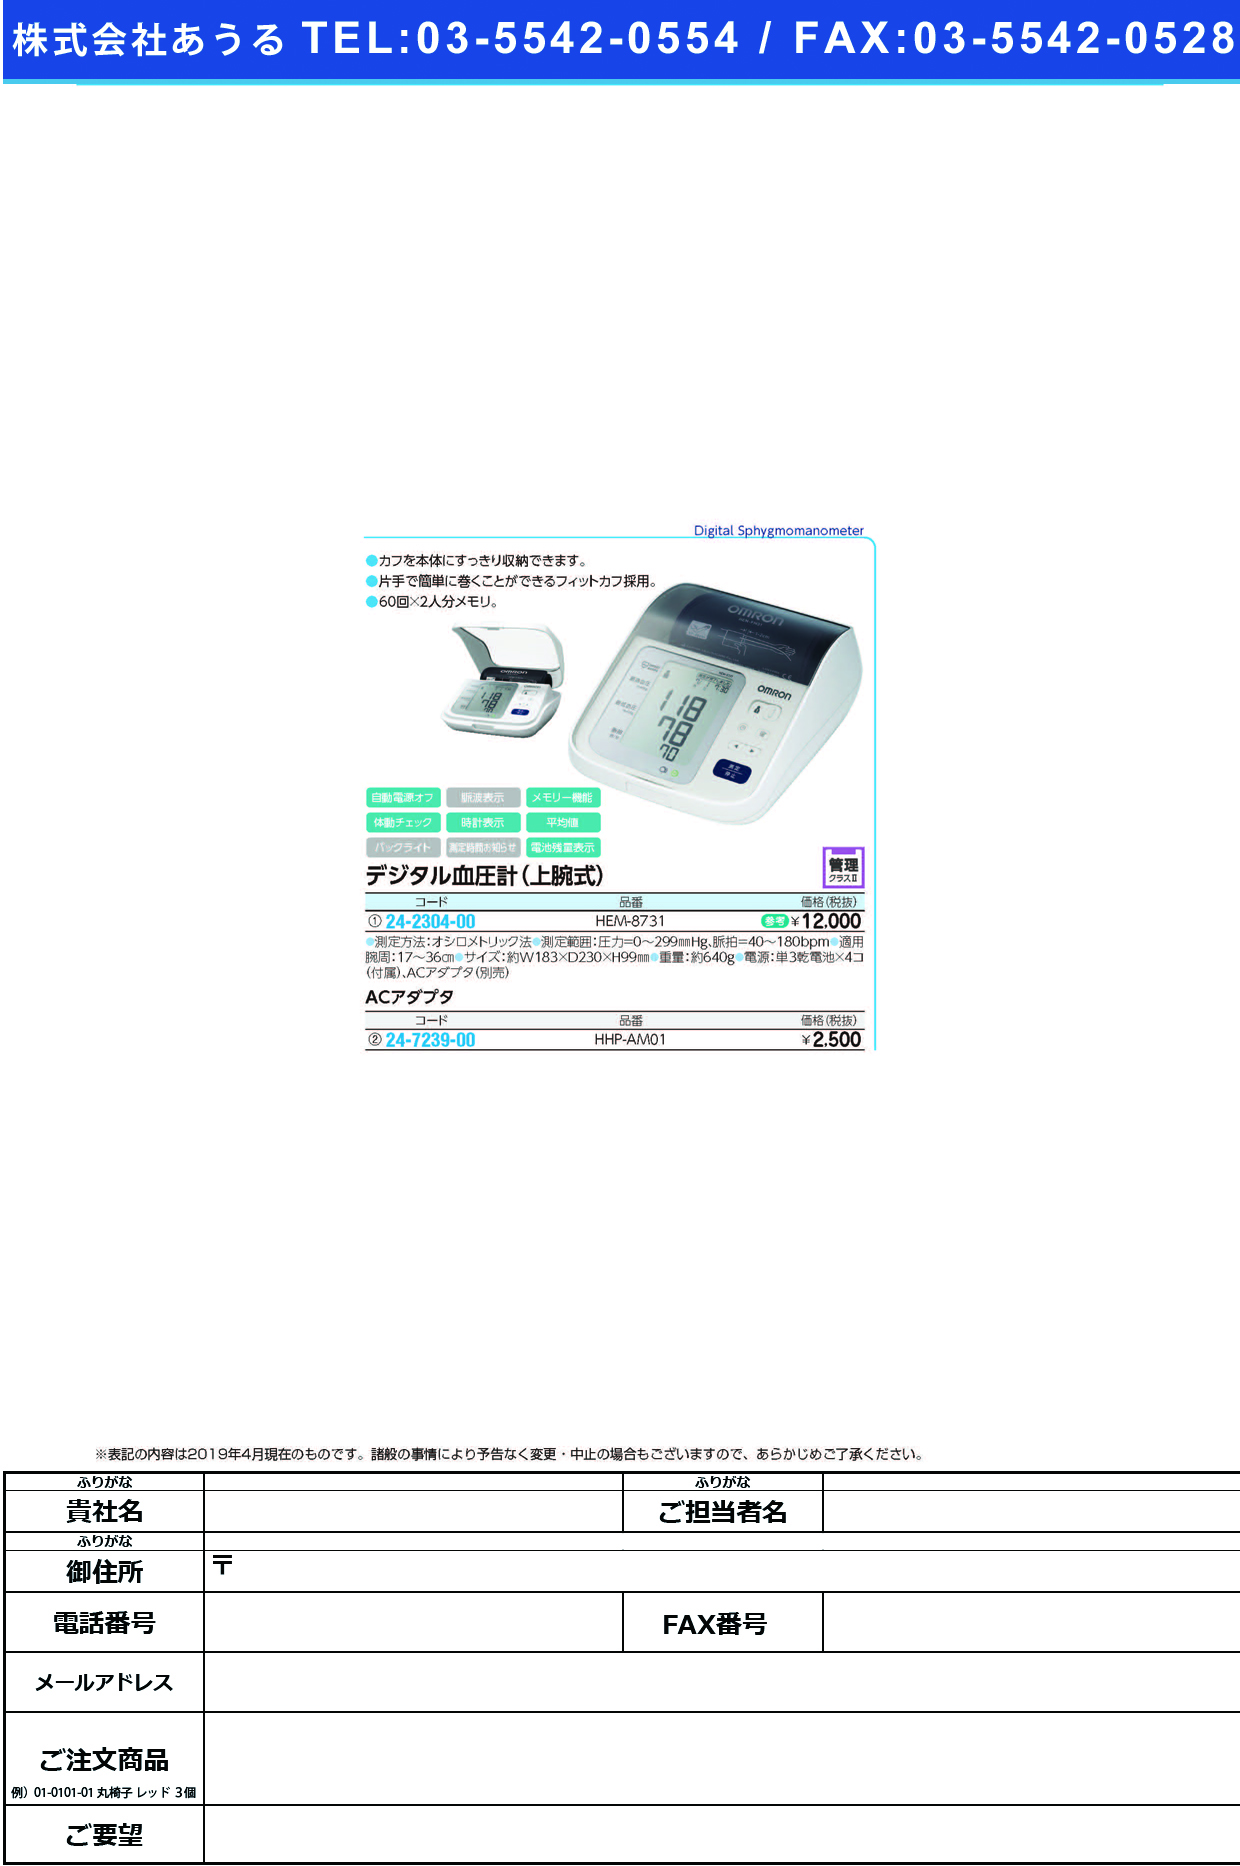 (24-2304-00)デジタル自動血圧計（上腕式） HEM-8731 ﾃﾞｼﾞﾀﾙｼﾞﾄﾞｳｹﾂｱﾂｹｲ(フクダコーリン)【1台単位】【2019年カタログ商品】